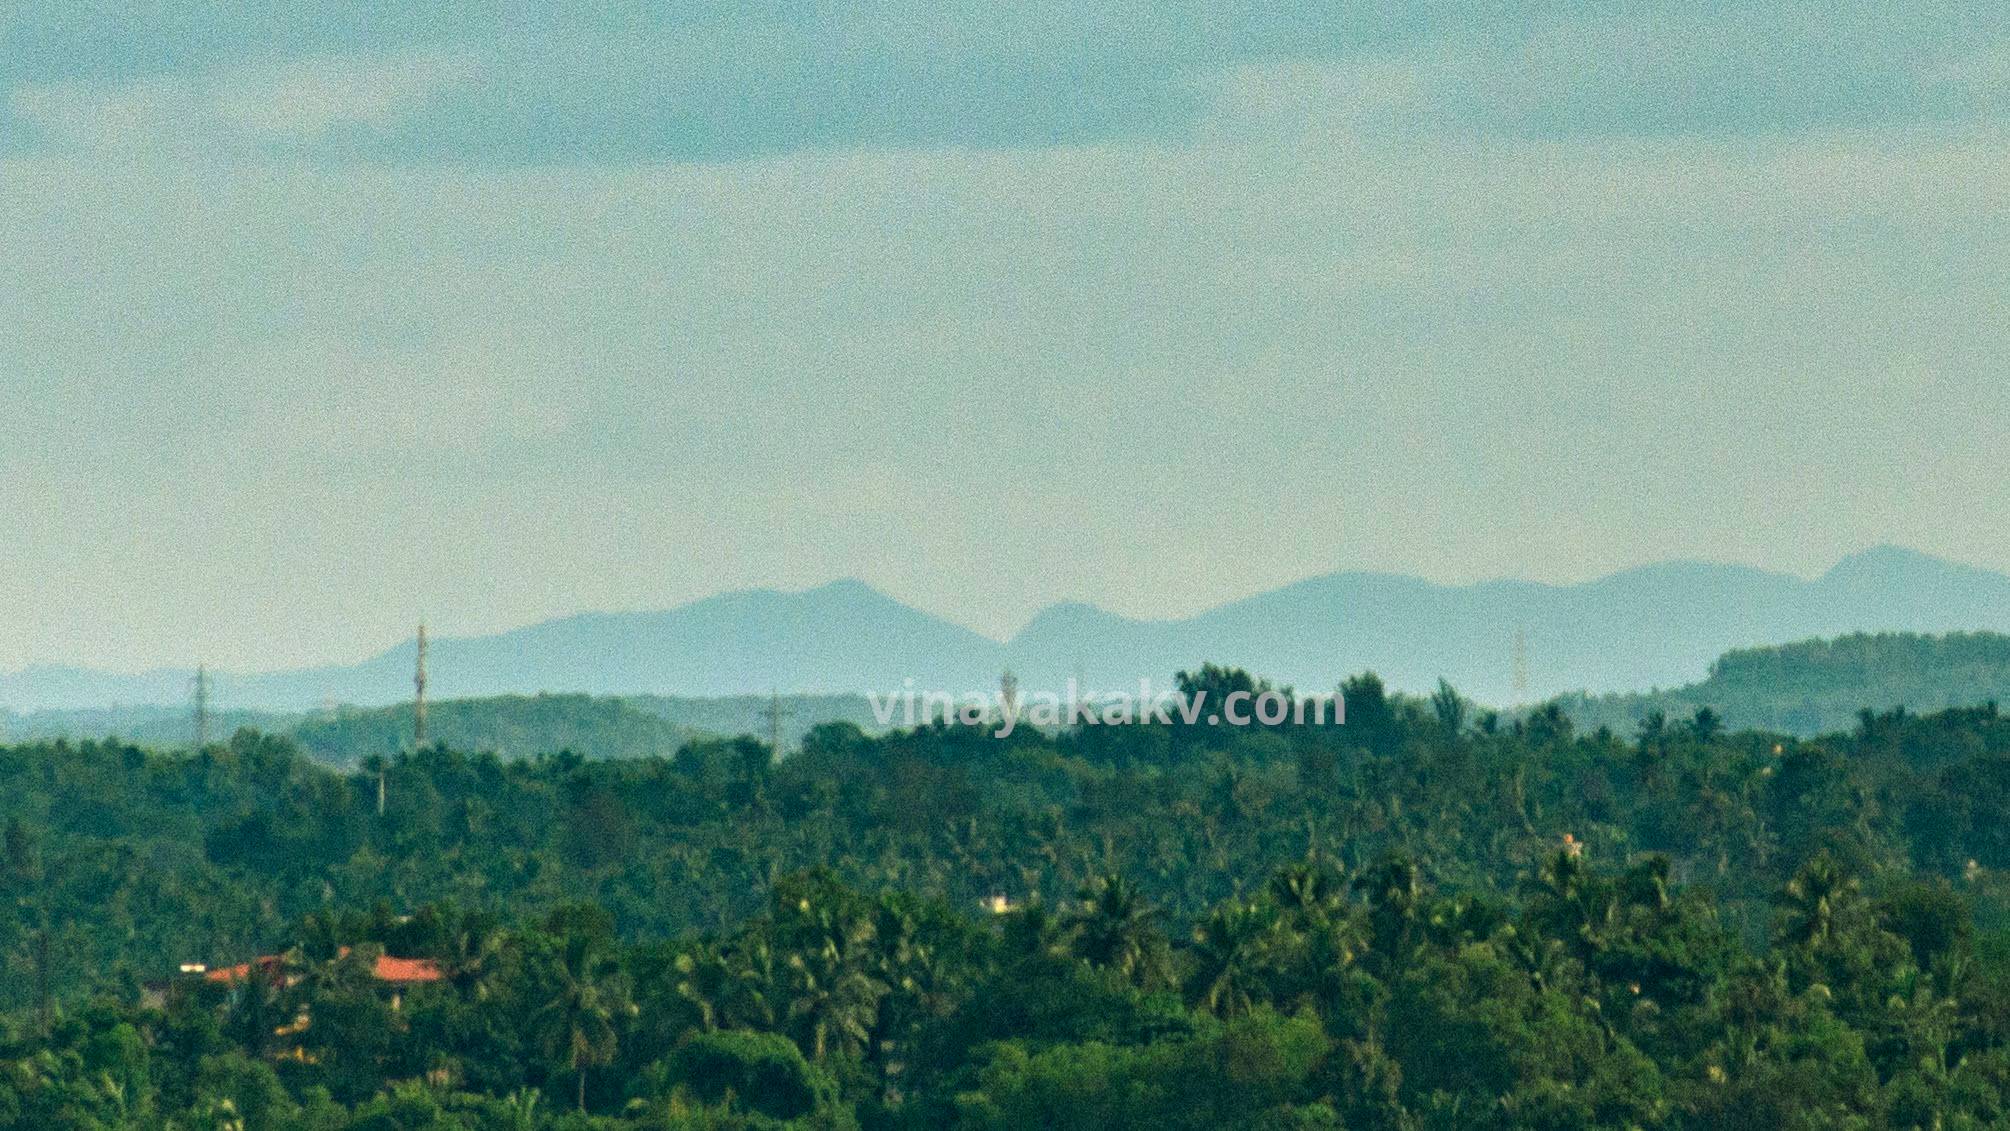 Hills bordering Shivamogga district